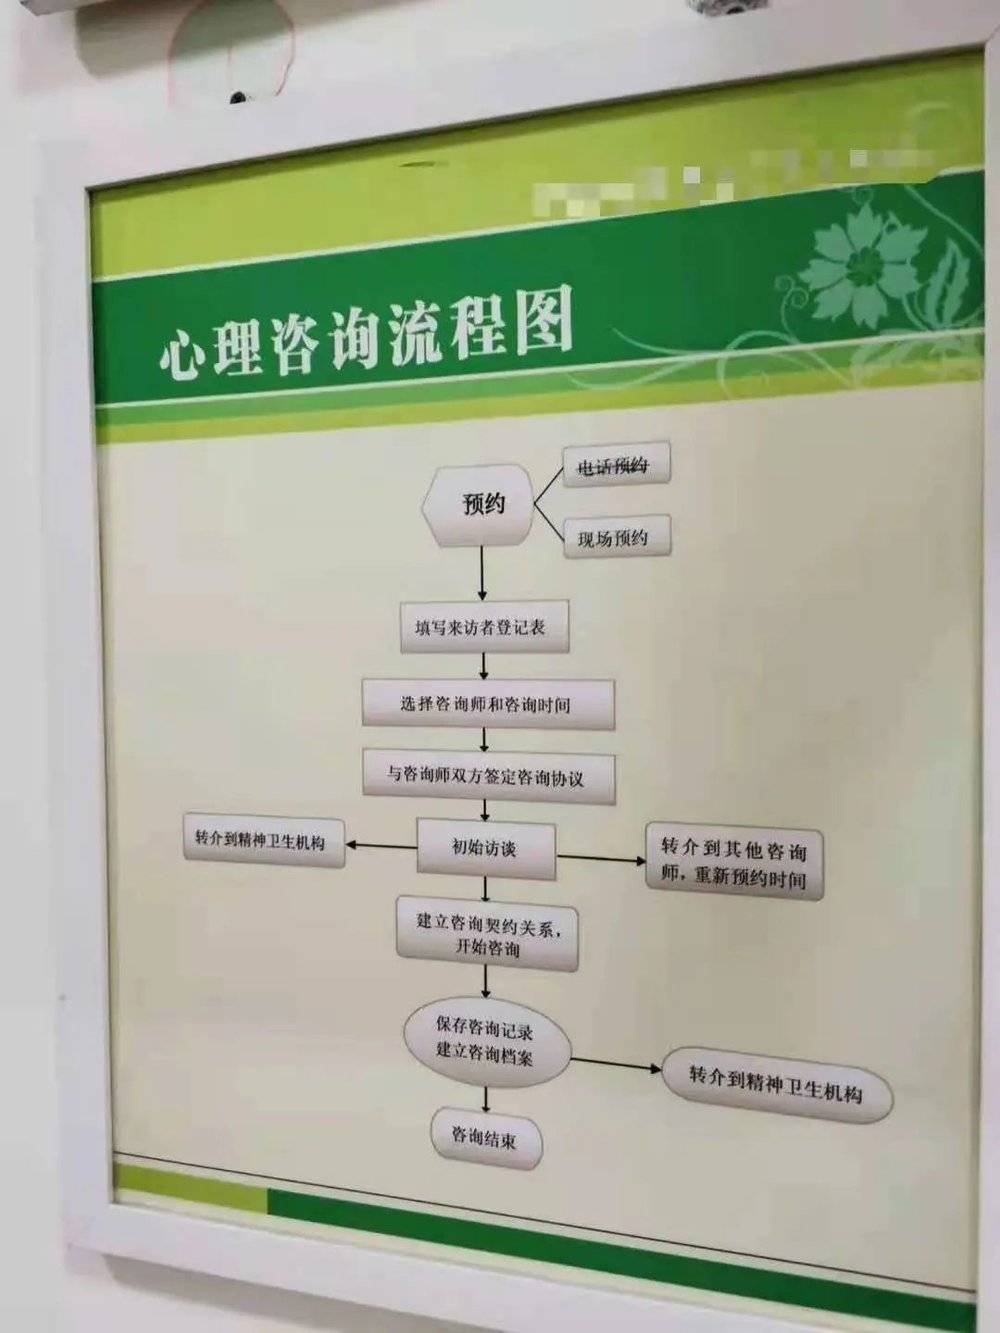 北京某高校心理咨询流程图